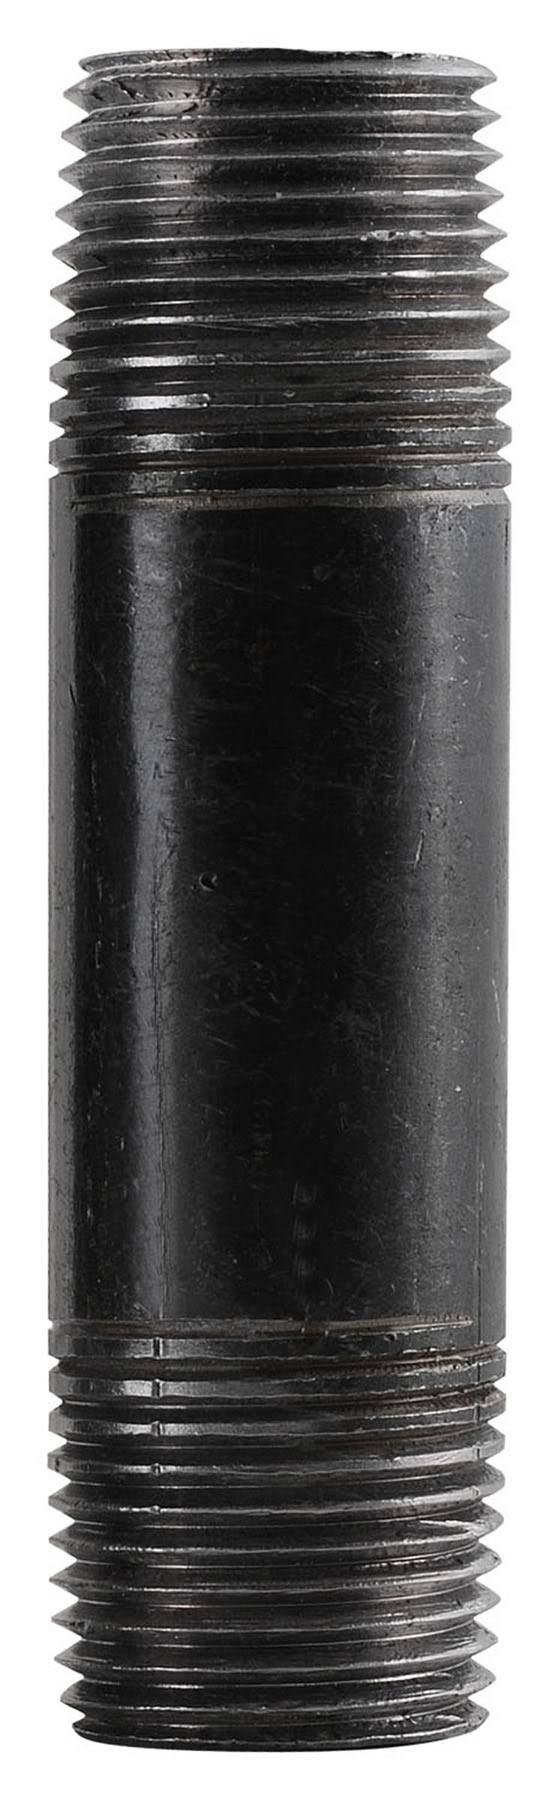 Mueller Industries Steel Nipple - Black, 1/2"x1/2"